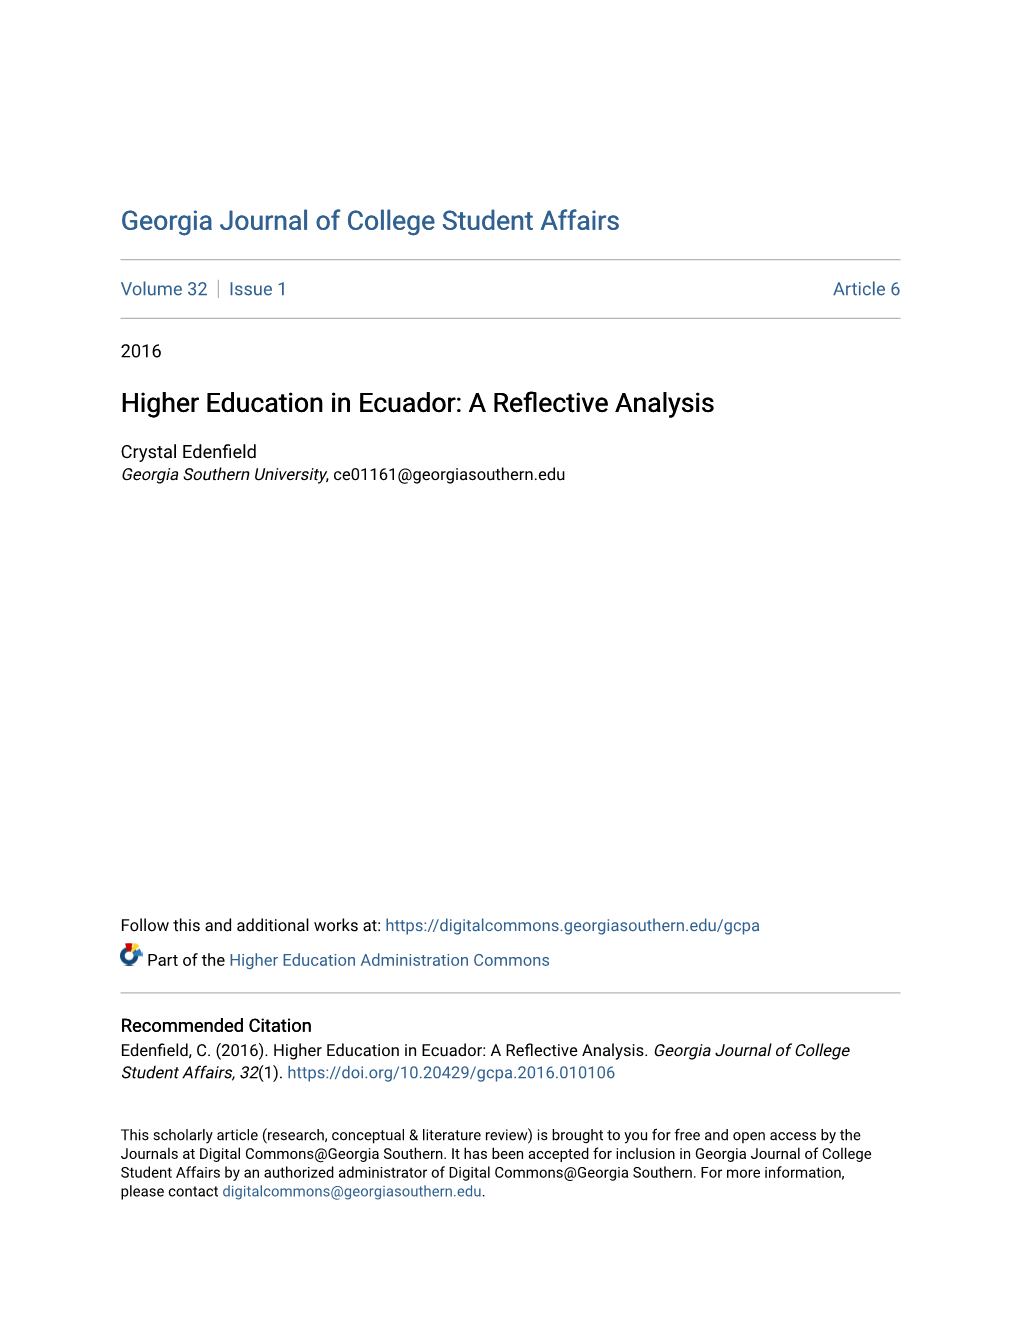 Higher Education in Ecuador: a Reflective Analysis